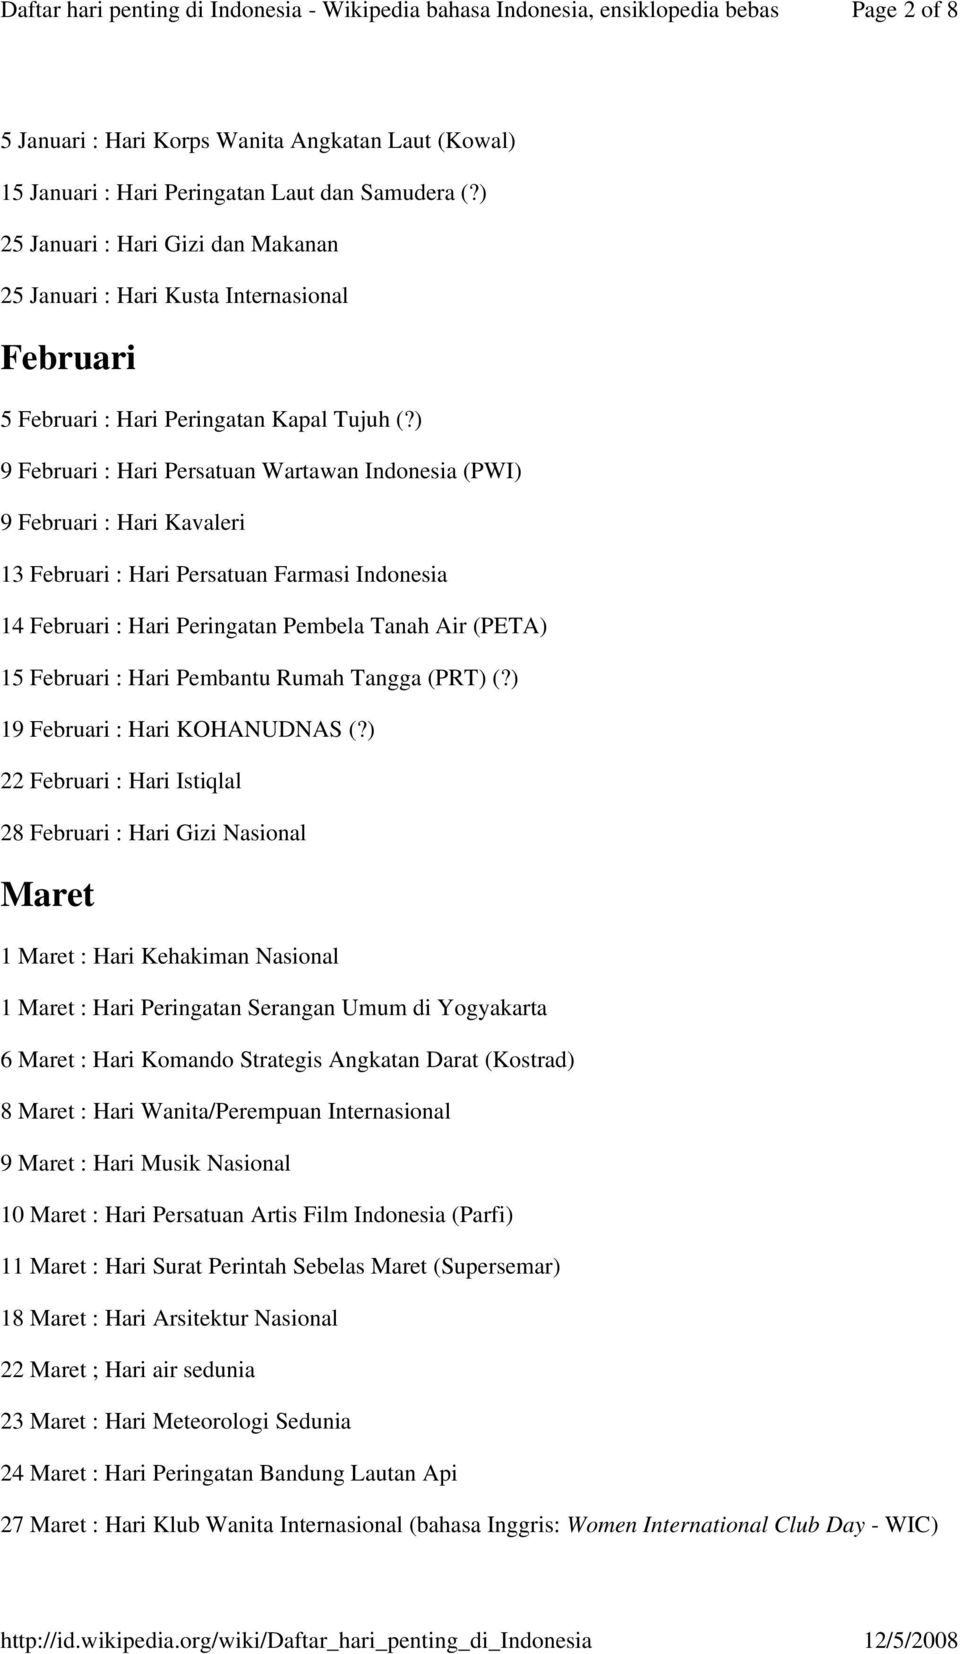 Daftar hari penting di Indonesia - Wikipedia bahasa Indonesia, ensiklopedia  bebas - PDF Download Gratis